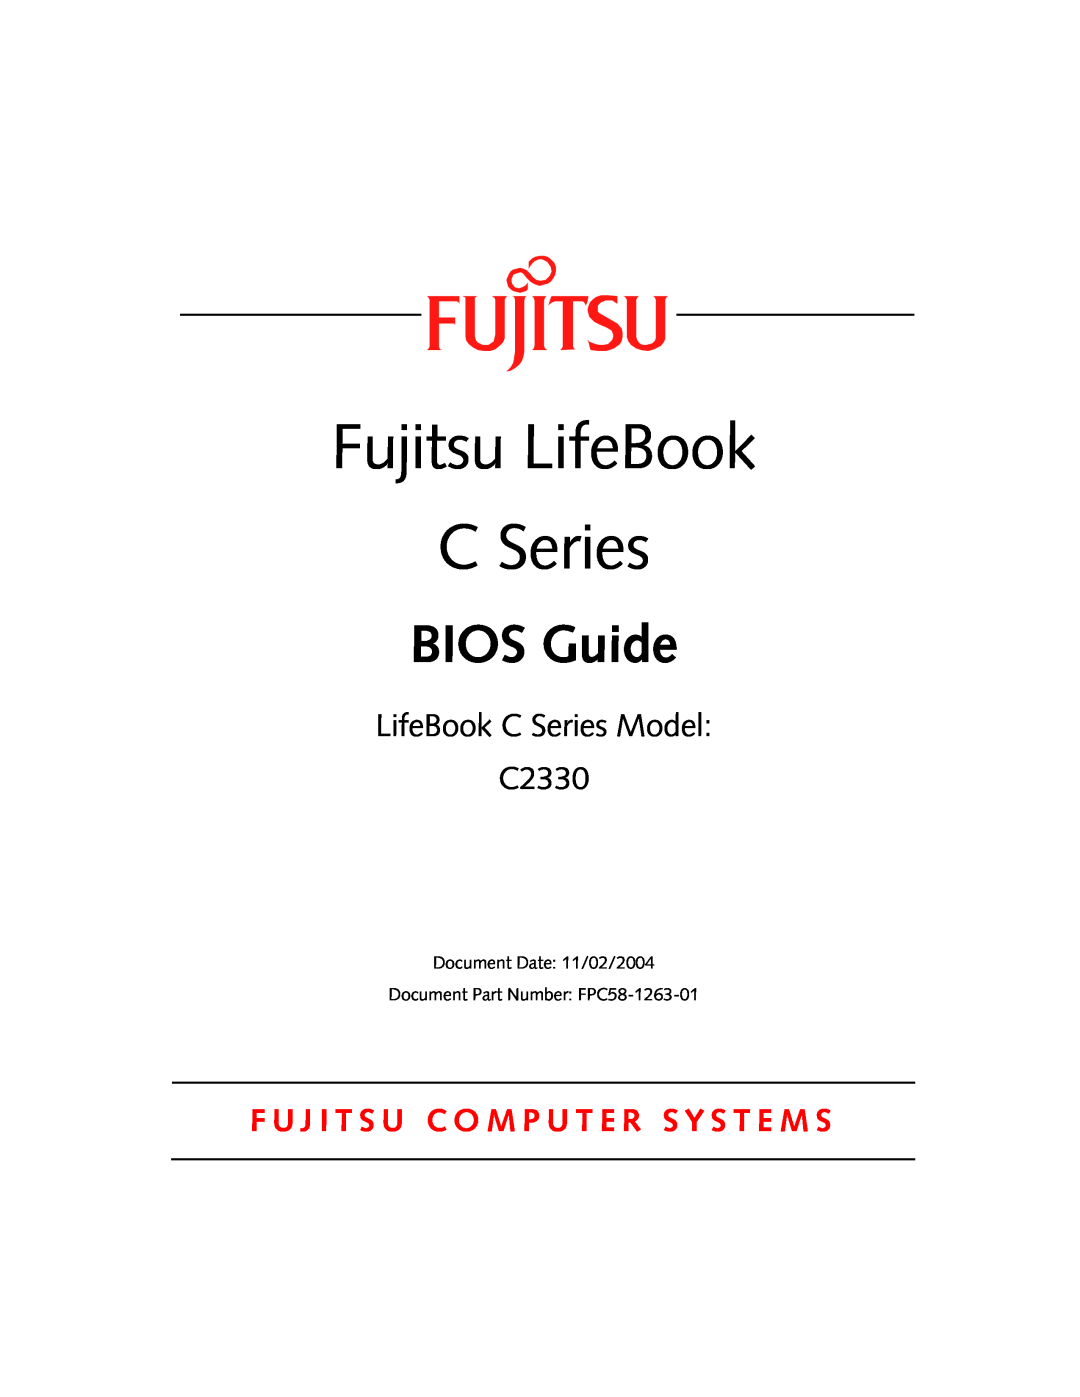 Fujitsu manual Fujitsu LifeBook, BIOS Guide, LifeBook C Series Model C2330 